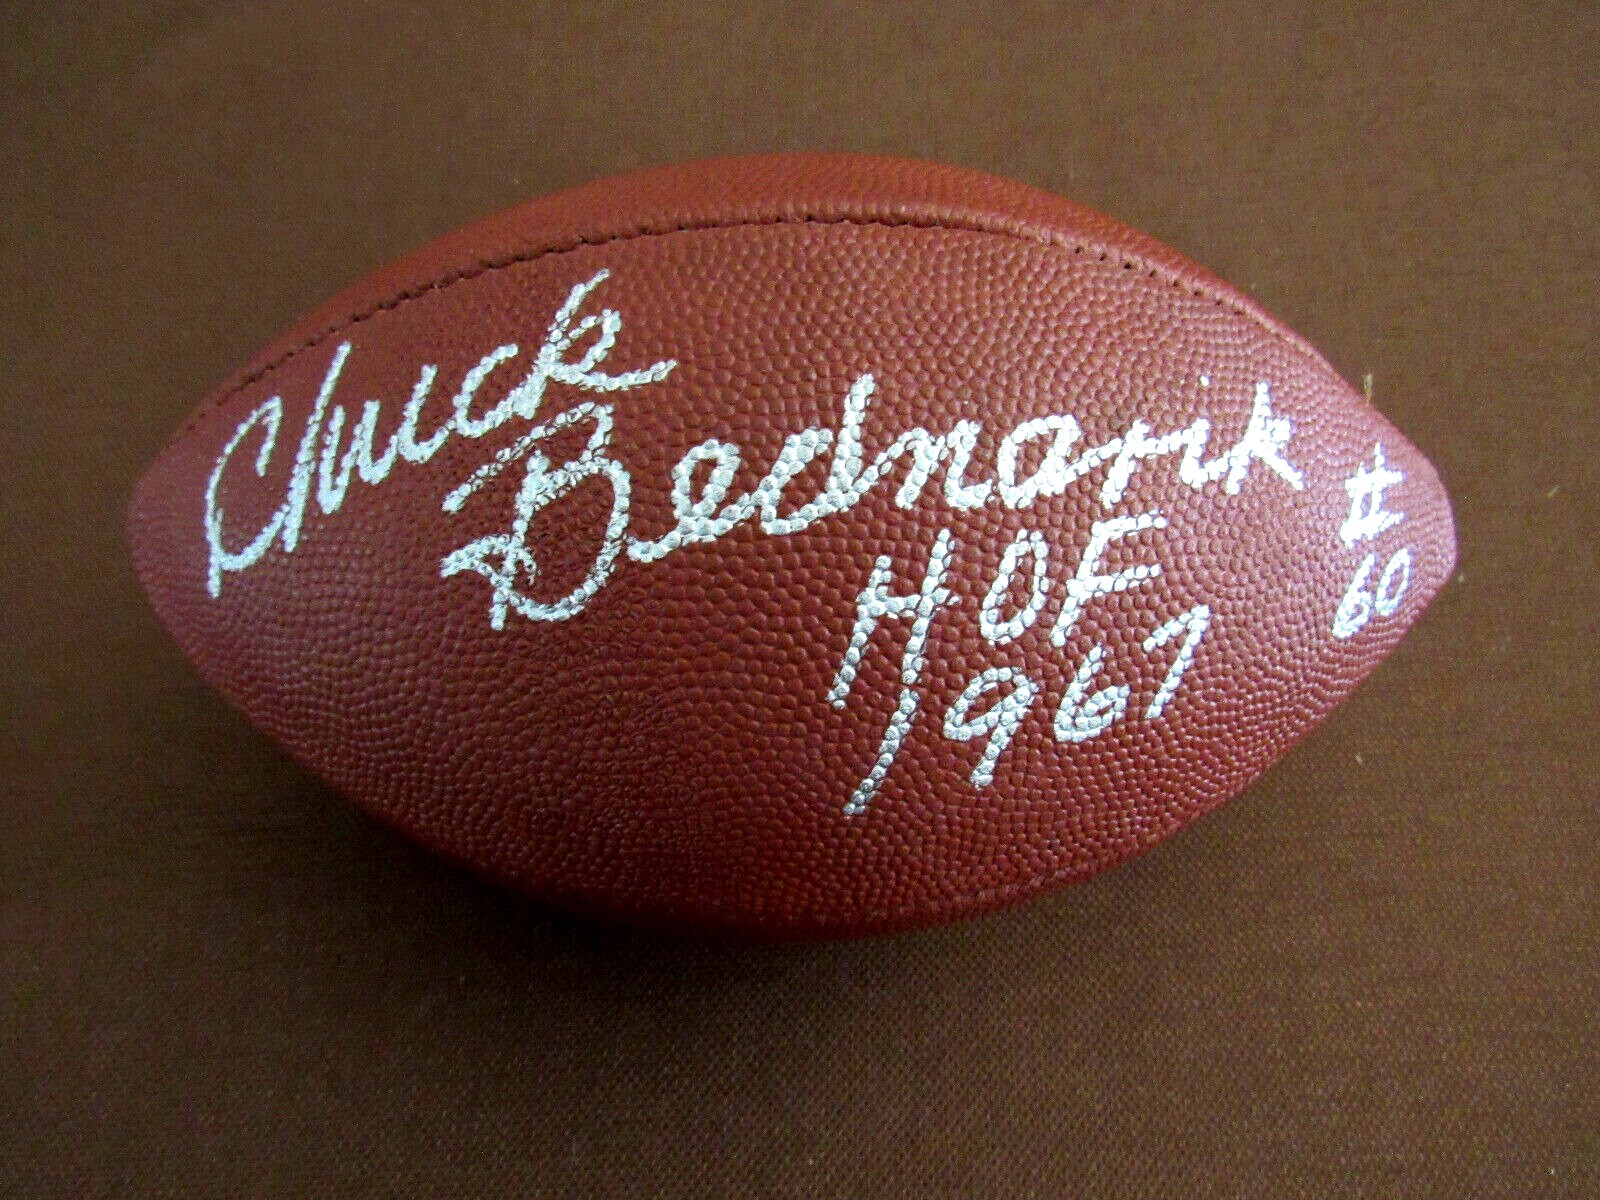 Chuck bednarik signed football